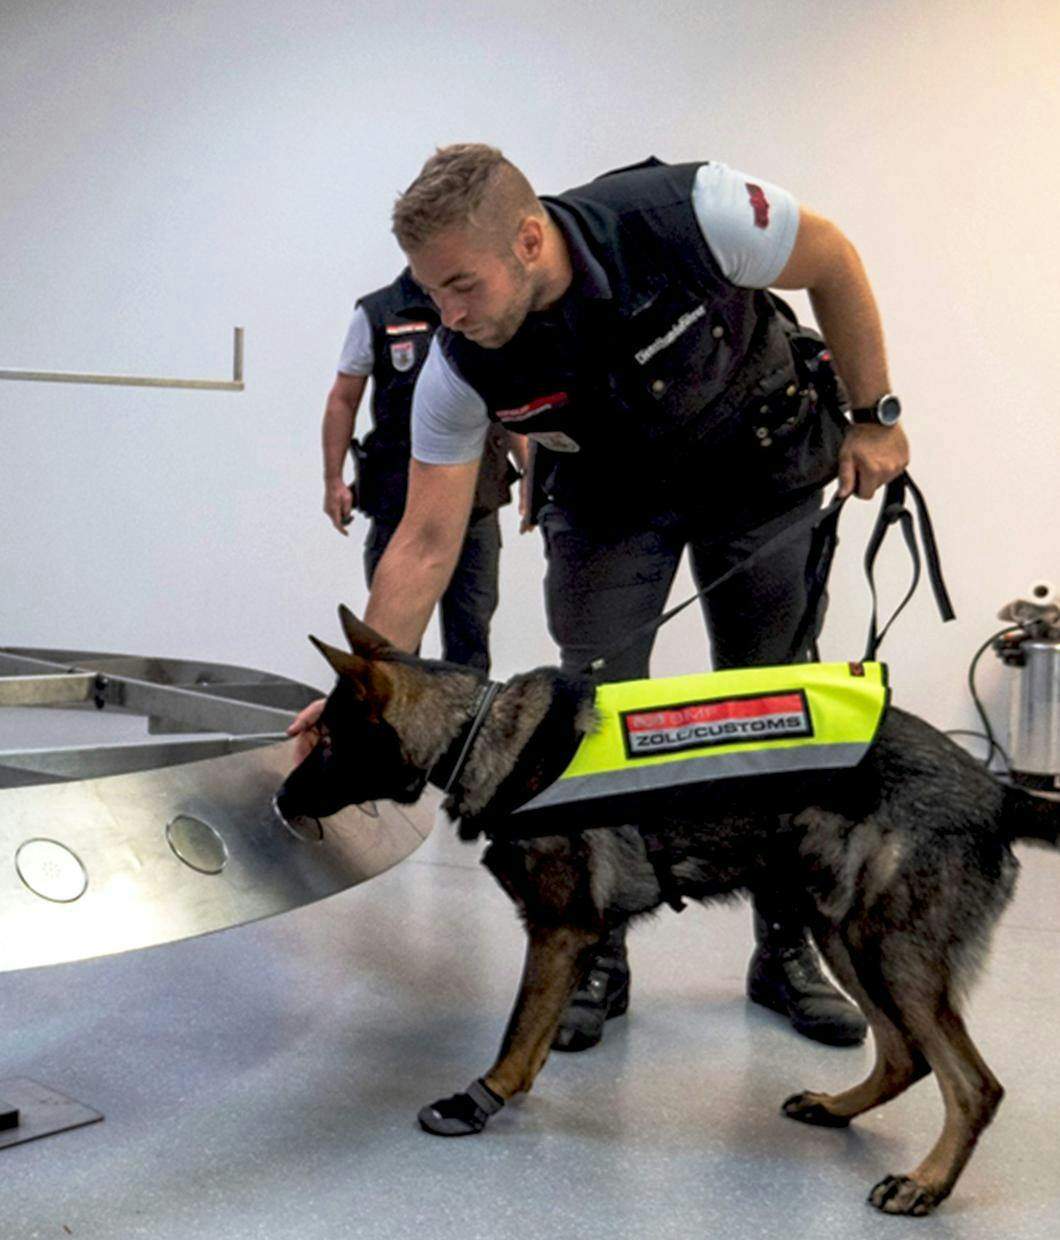 Ein Hund des österreichischen Zoll mit seinem Hundeführer, schnuppert an einen Gegenstand. Der Hund hat eine Warnweste mit der Aufschrift ZOLL an.  Der Hundeführer ist in Zolluniform. Die Situation stellt ein Training dar. © ©BMF